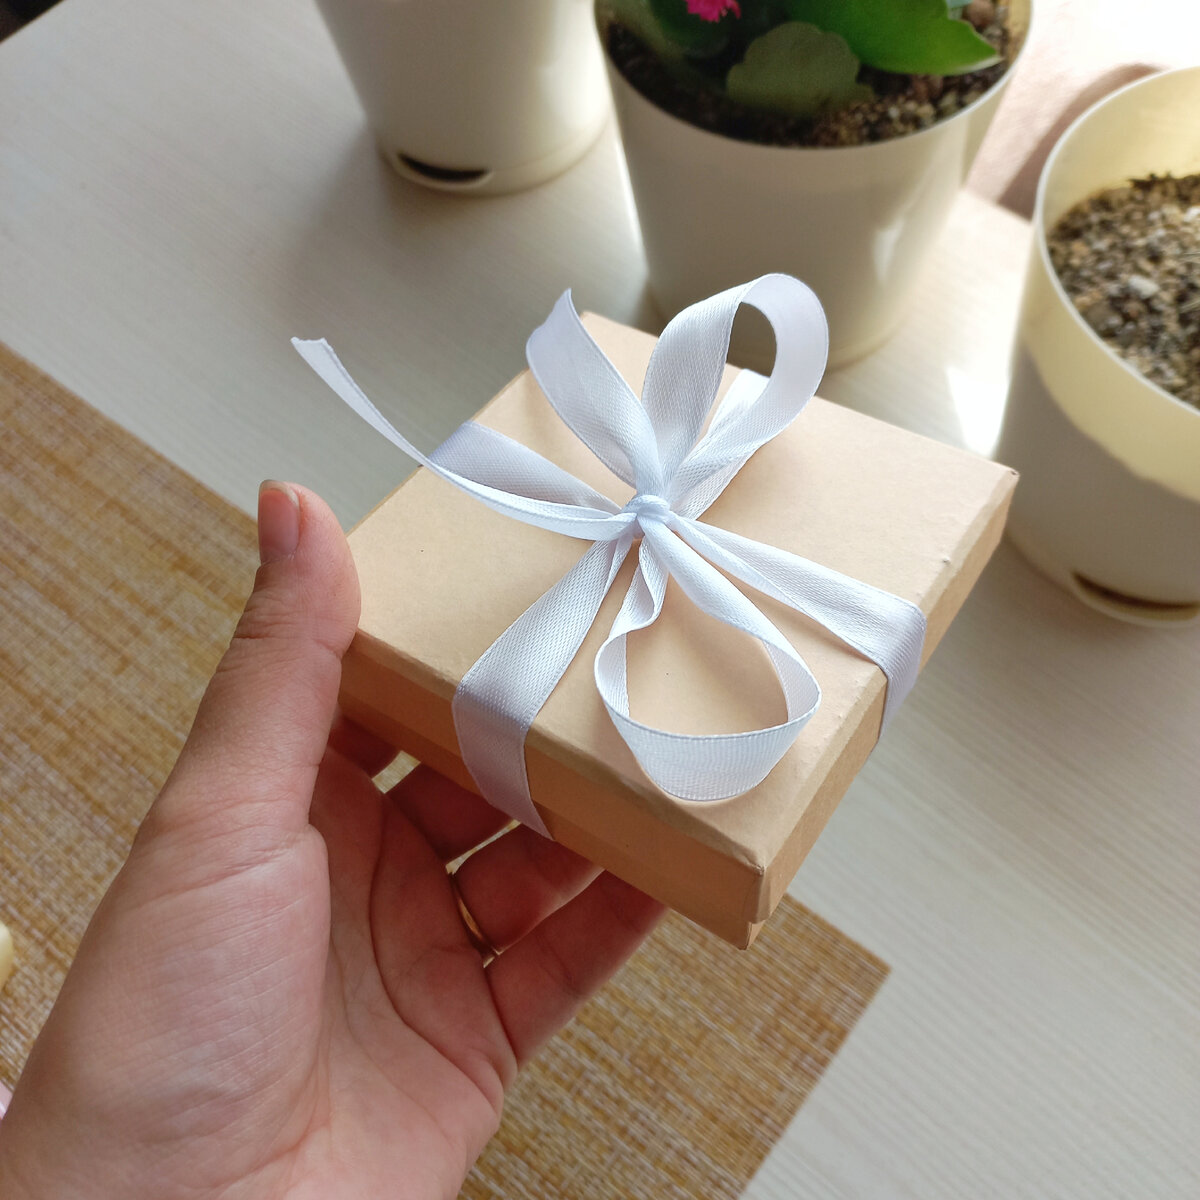 Упаковка для корпоративных подарков и именных сувениров: несколько идей по оформлению